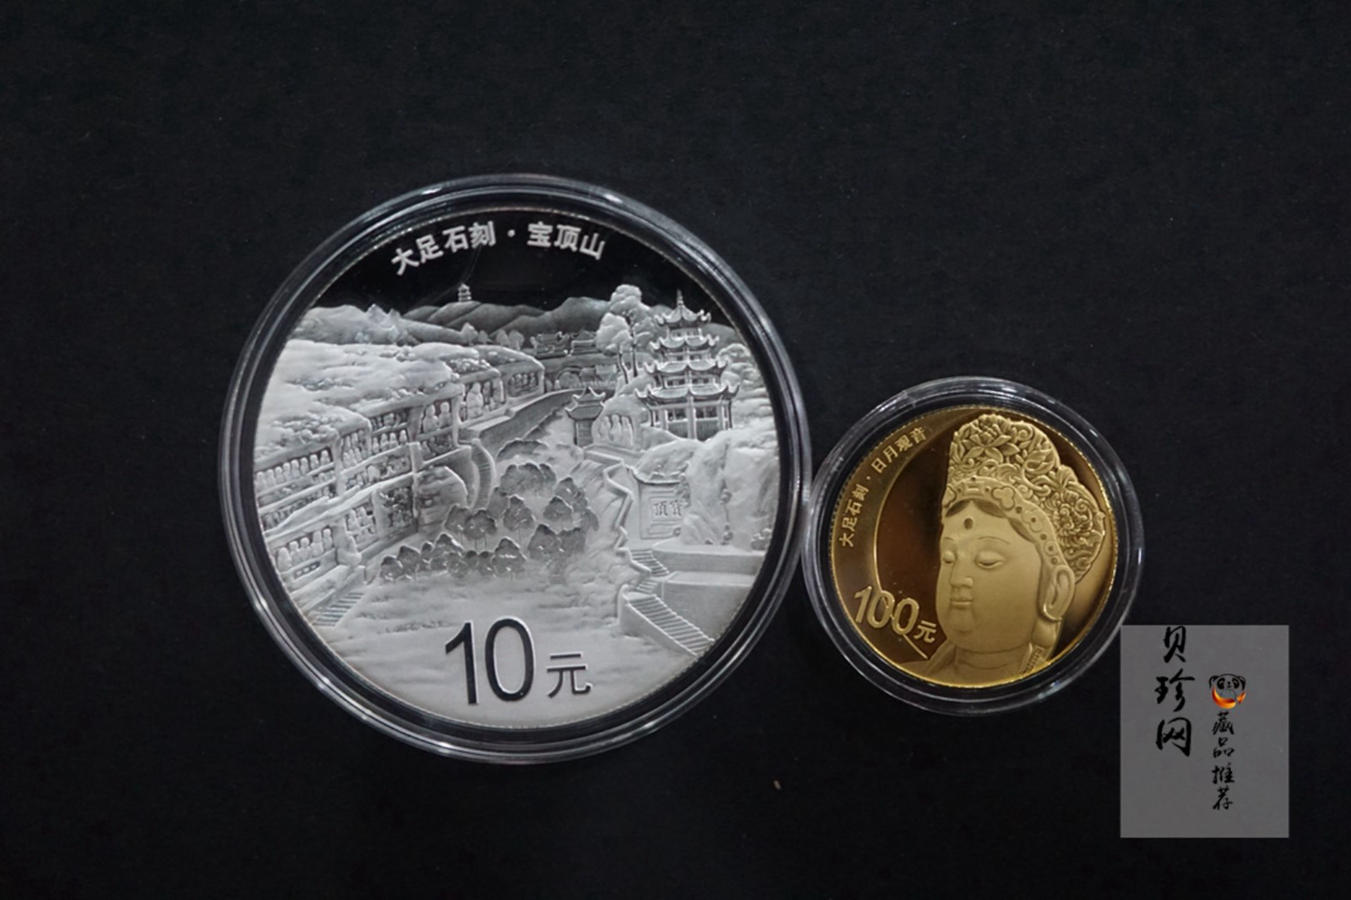 【169190】2016年世界遗产-大足石刻精制金银币2枚一套